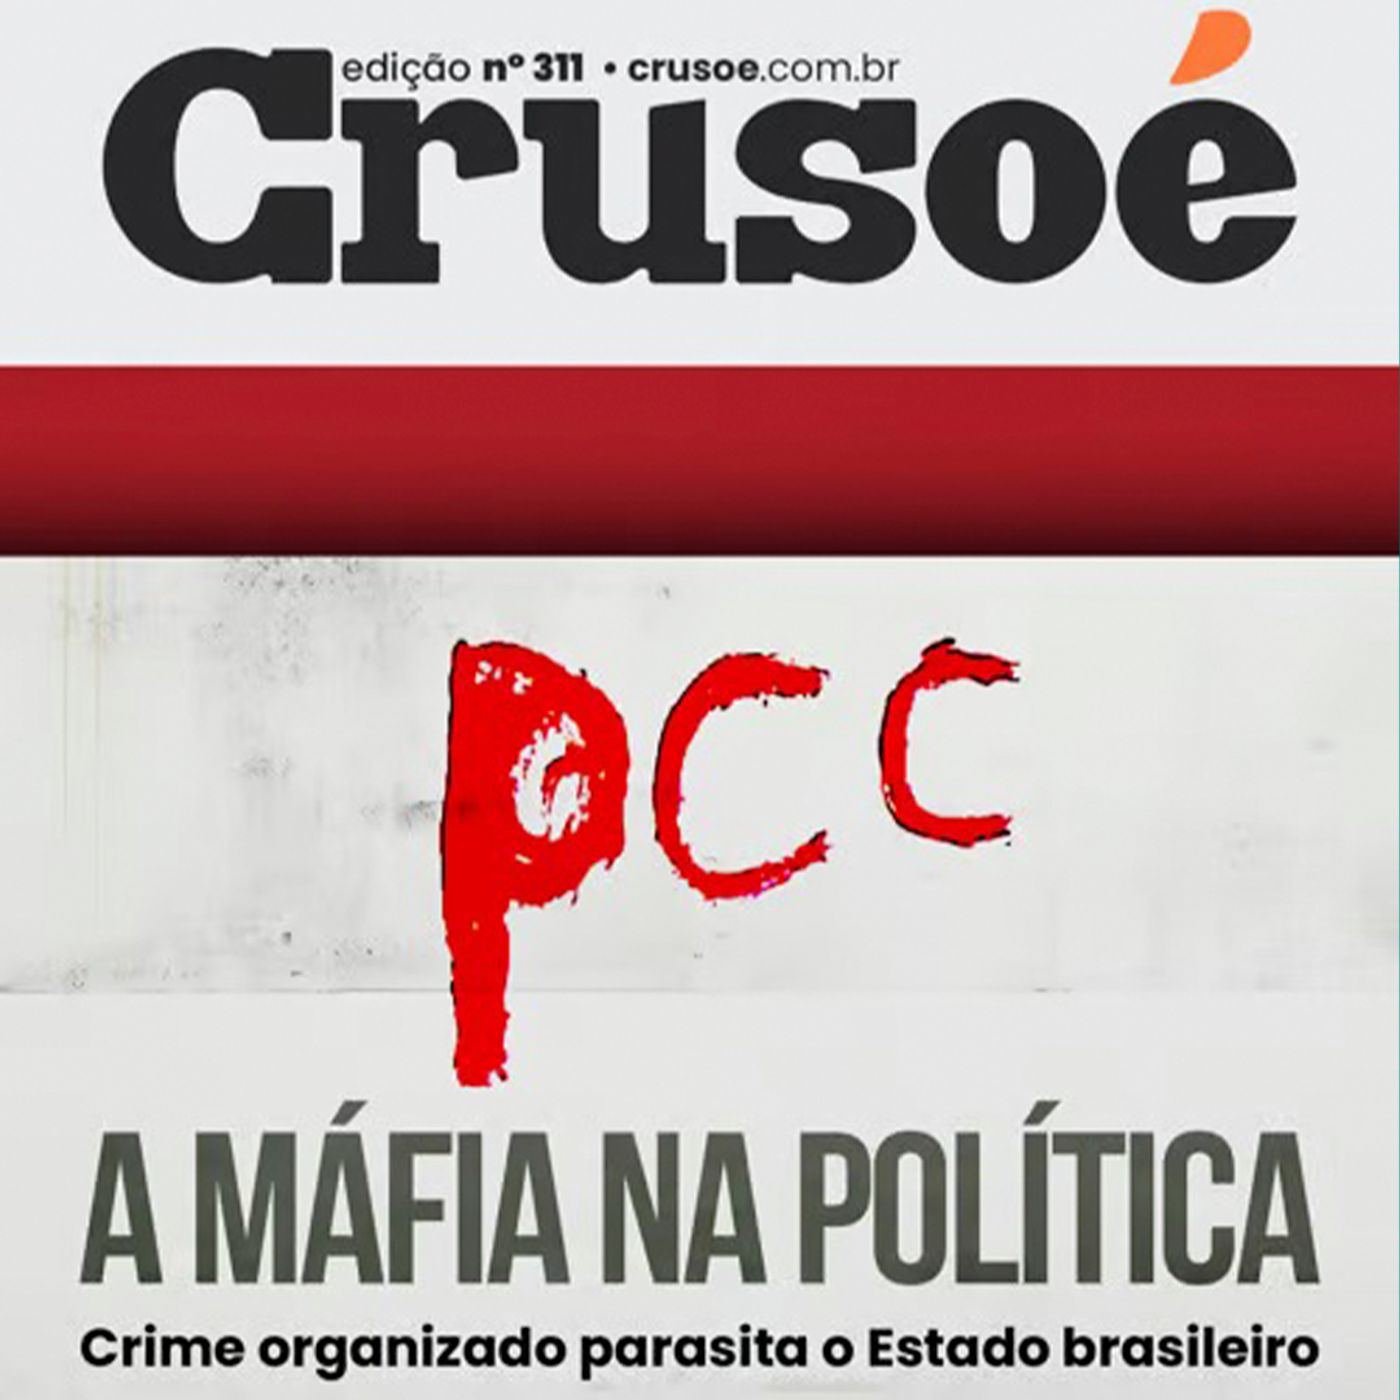 A nova edição da Crusoé conta como a organização criminosa, PCC, conseguiu se infiltrar na política